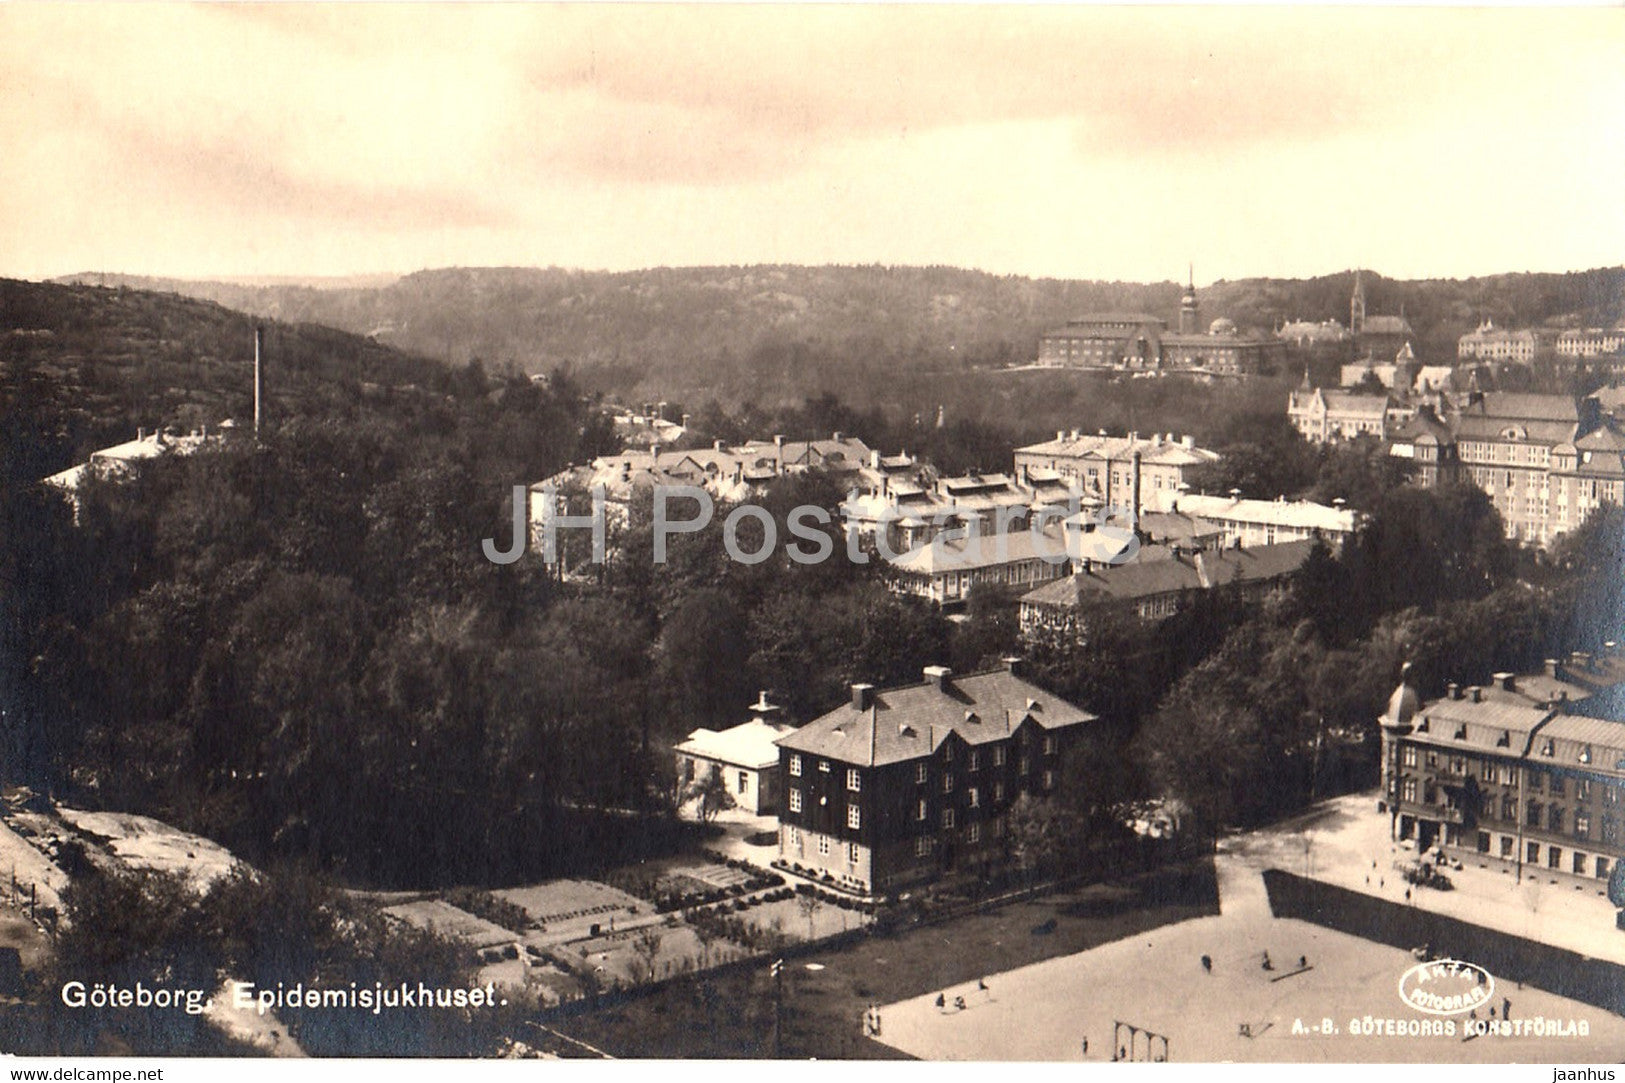 Goteborg - Epidemisjukhuset - Epidemic Hospital - 166 - old postcard - Sweden - unused - JH Postcards